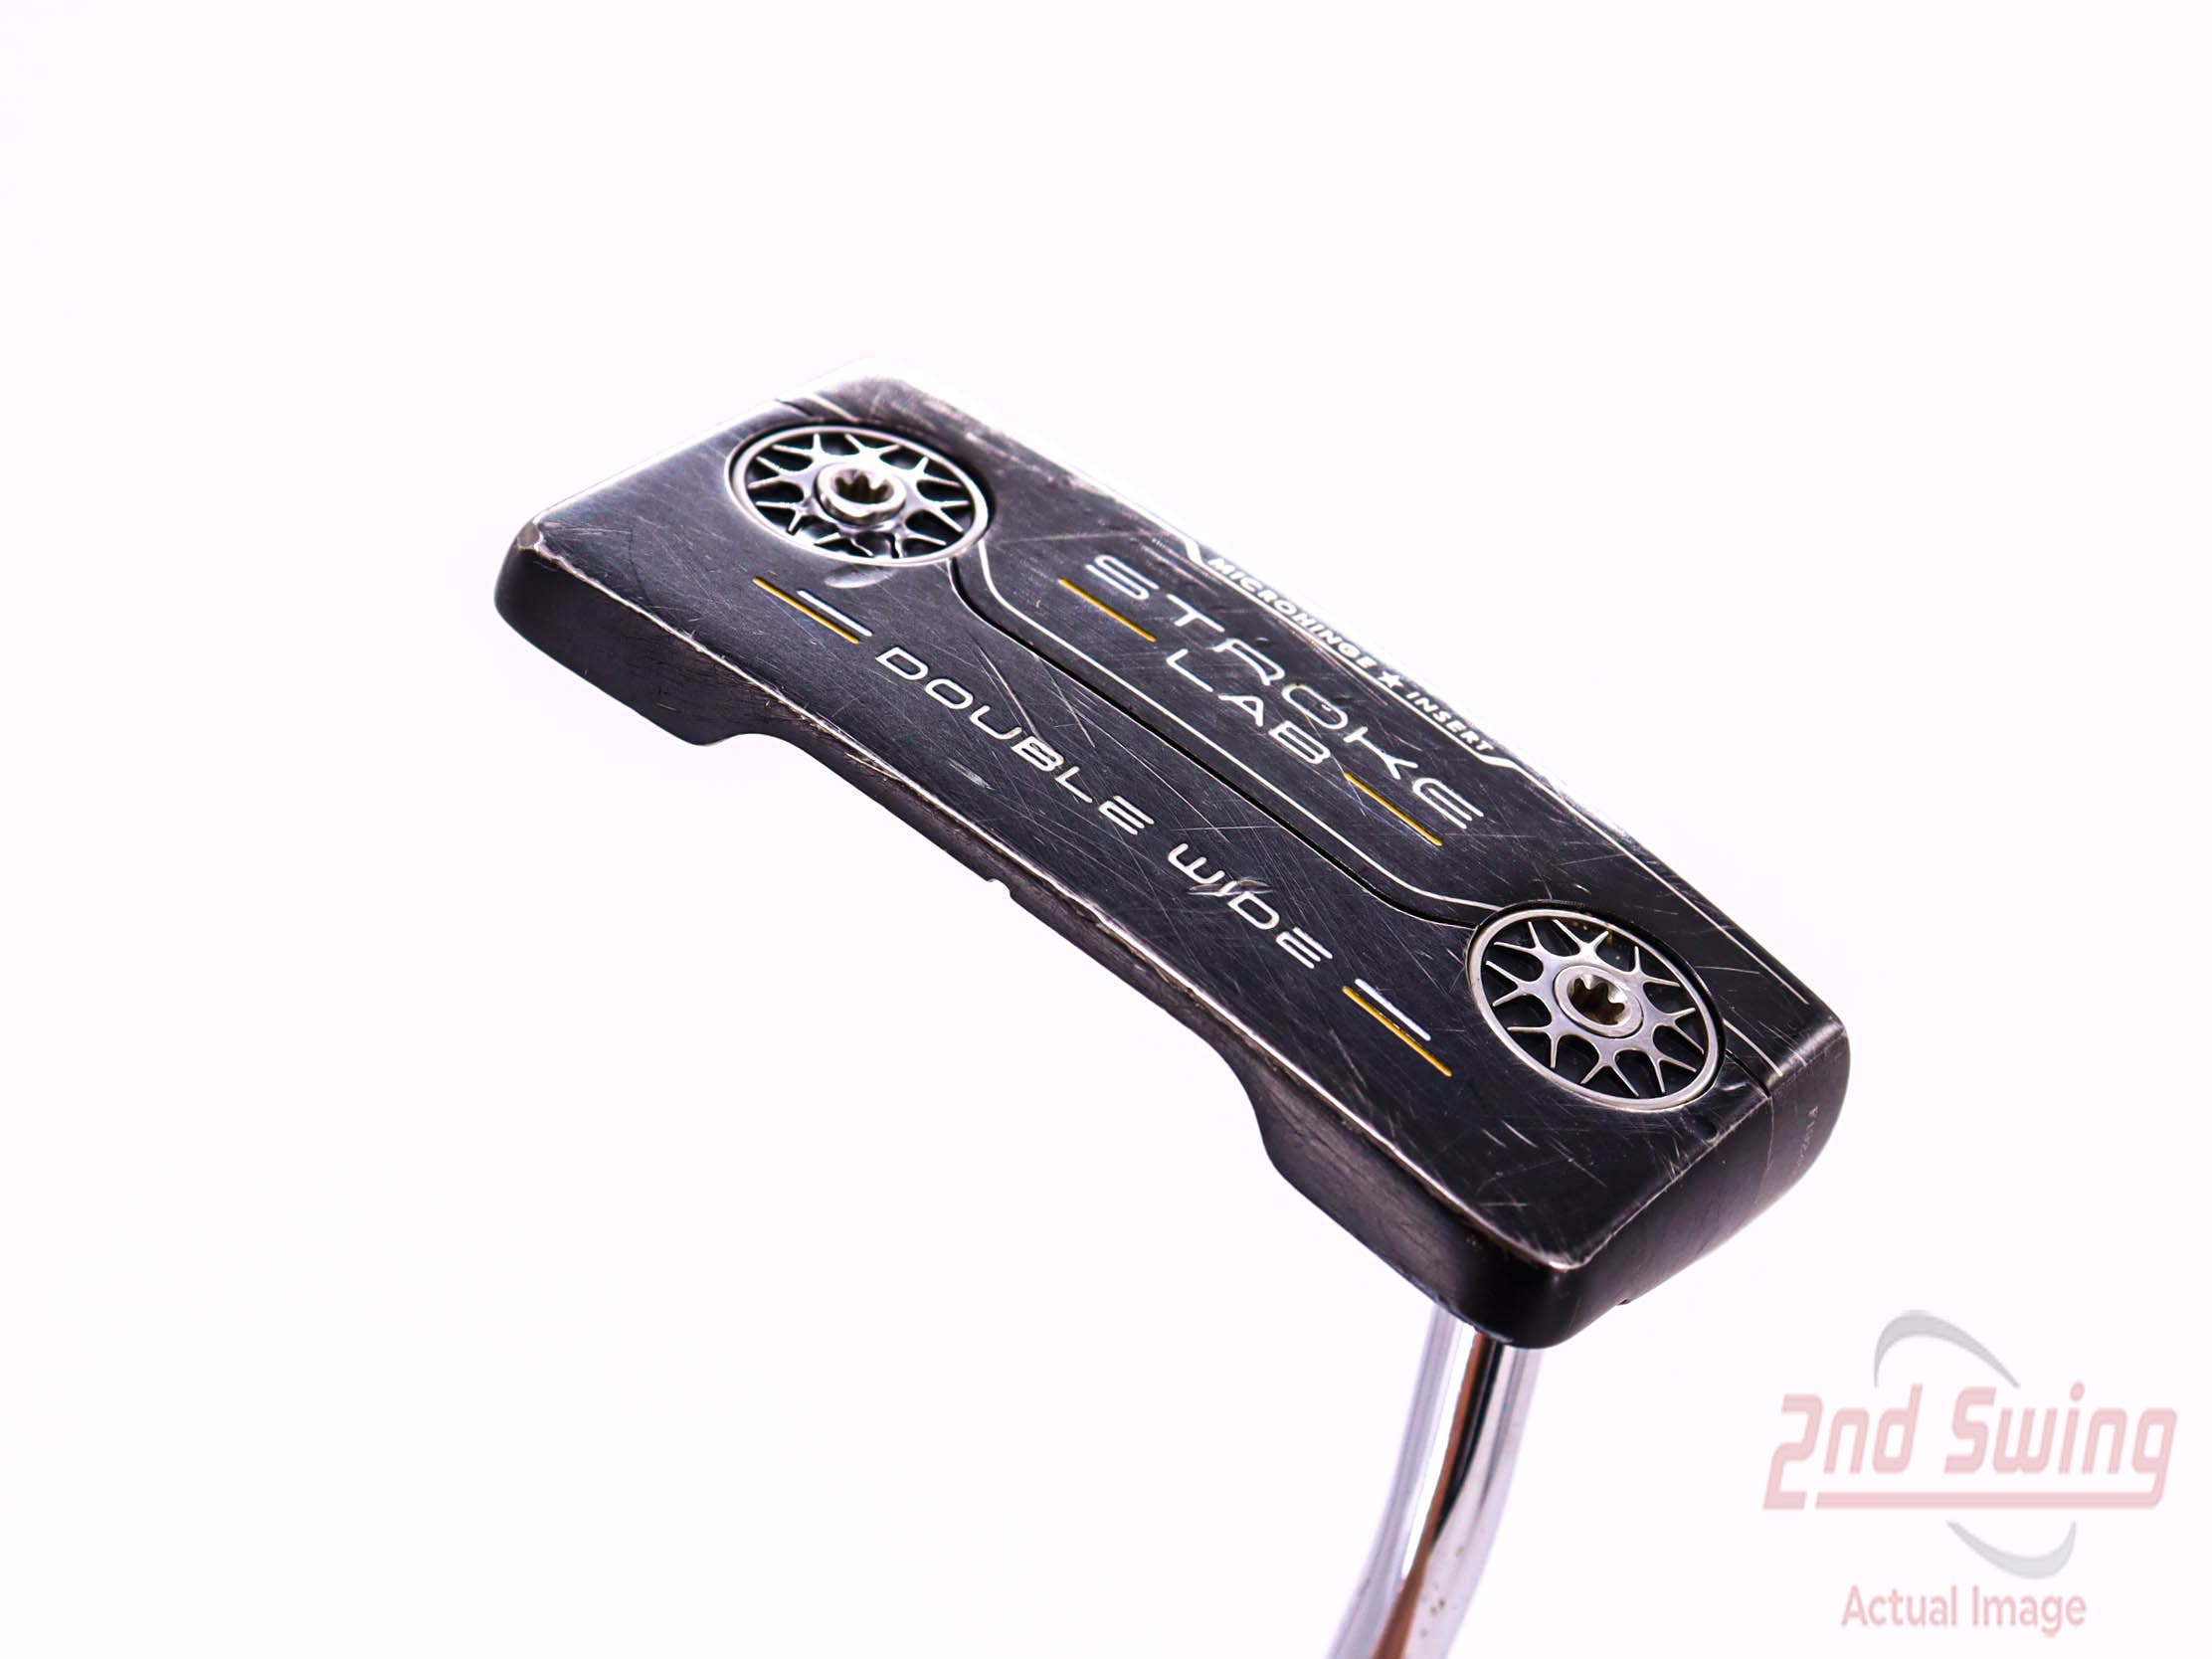 Odyssey Stroke Lab Black Double Wide Putter | 2nd Swing Golf